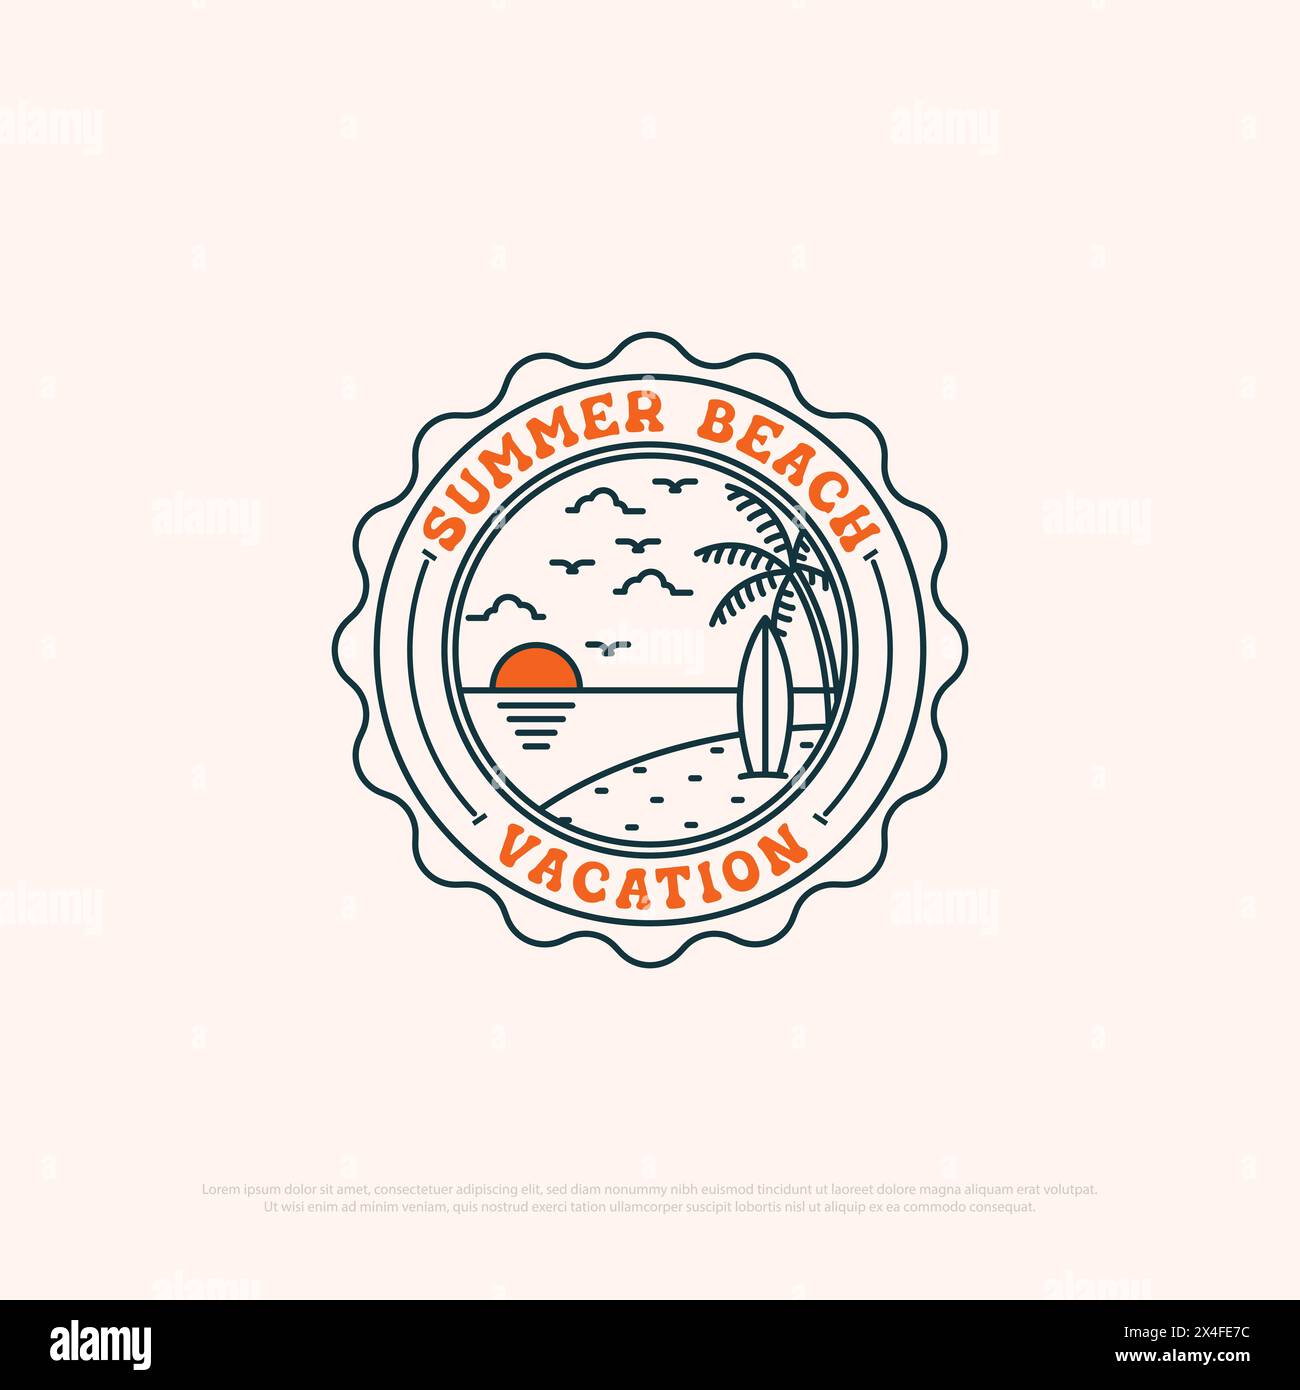 Sommer Urlaub Logo-Abzeichen mit Linie Art einfache Vektor minimalistische Illustration Vorlage, Reisebüro Logo Designs Stock Vektor